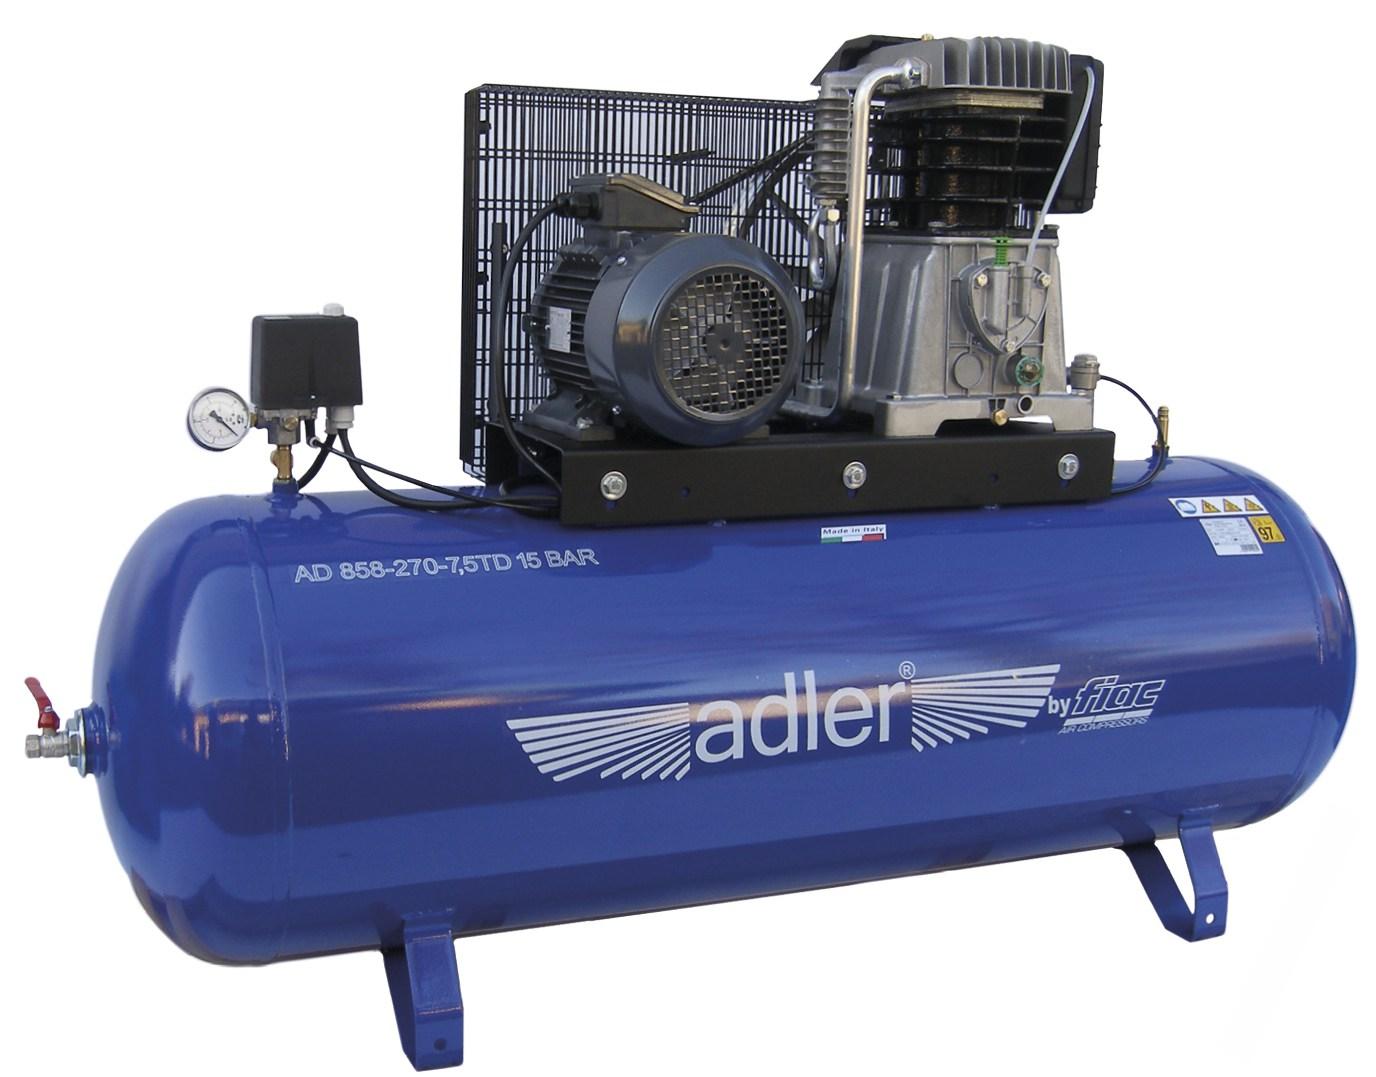 Adler olejový kompresor dvojvalcový AD 858-270-7,5TD 15BAR 270l